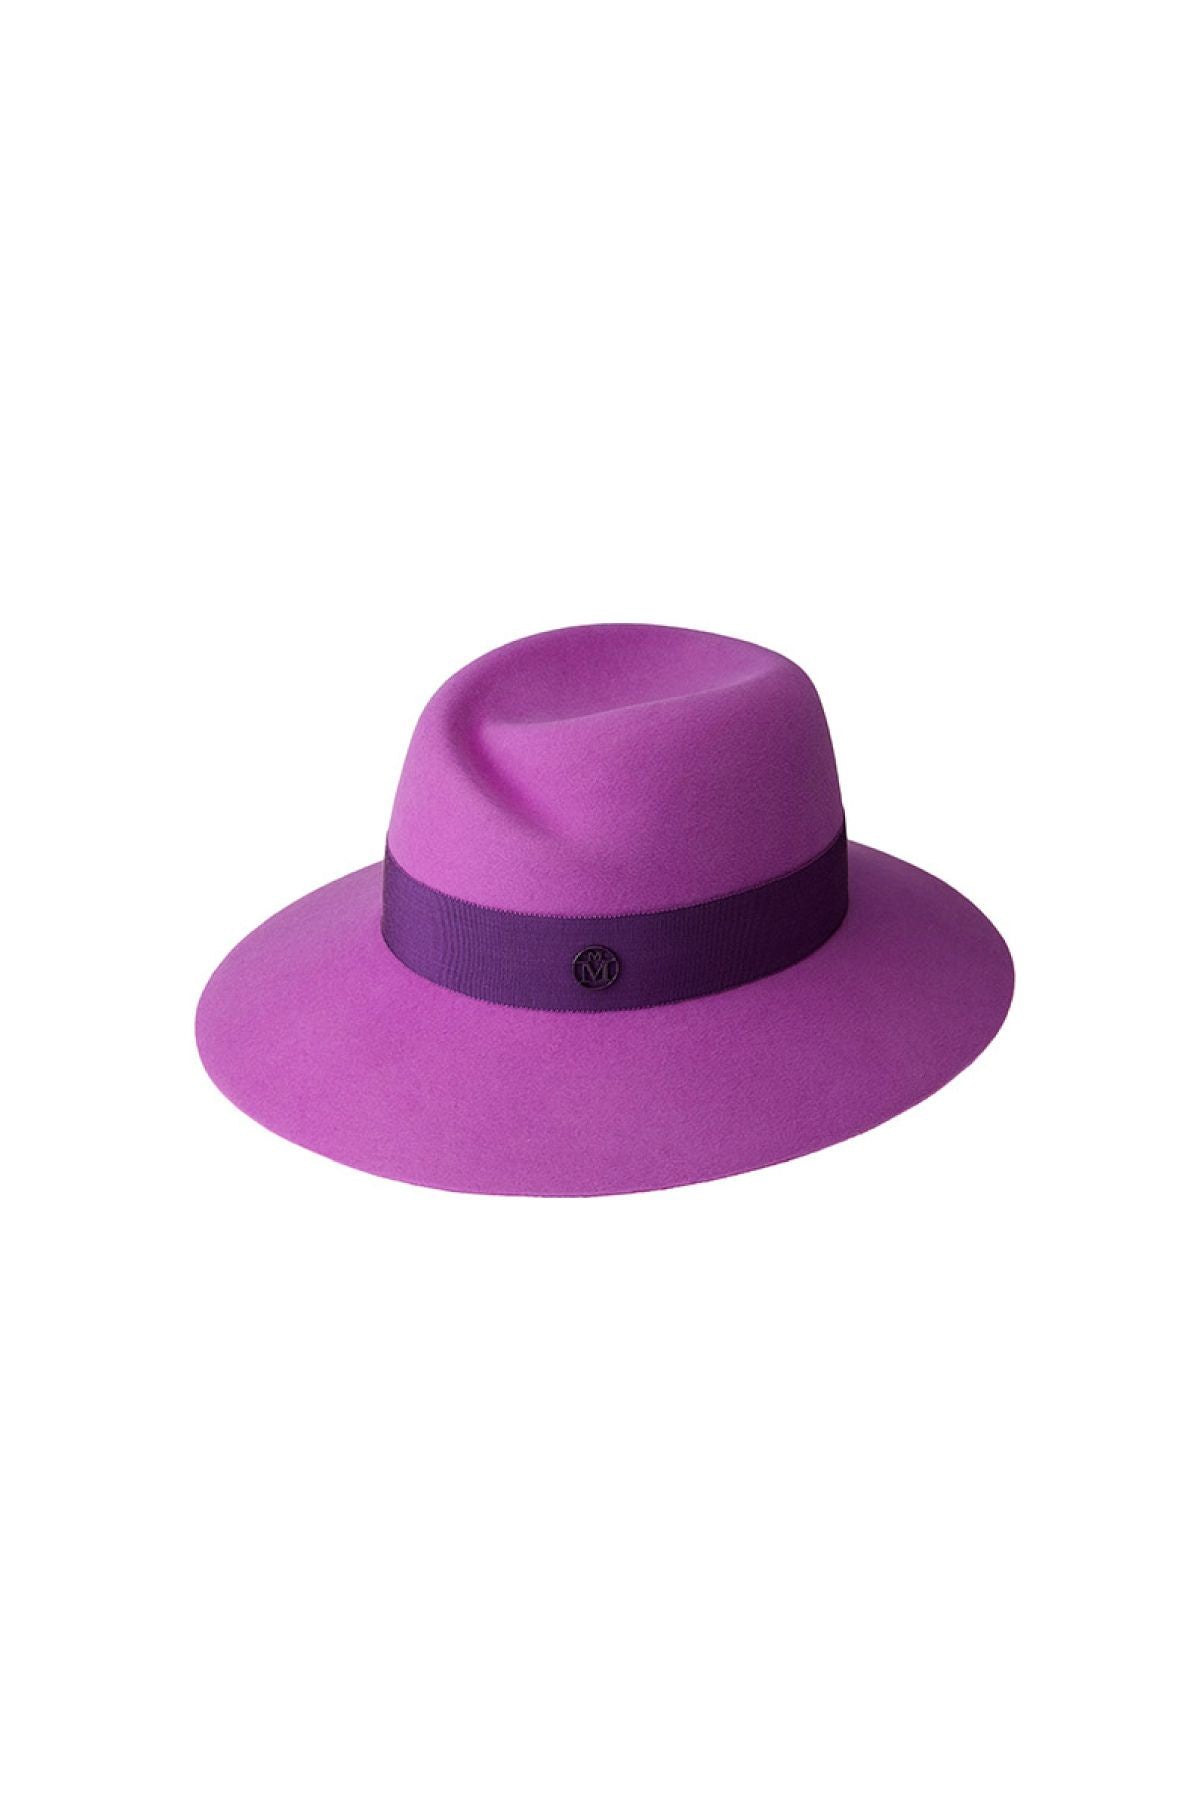 Maison Michel Virginie felt fedora hat - Pink